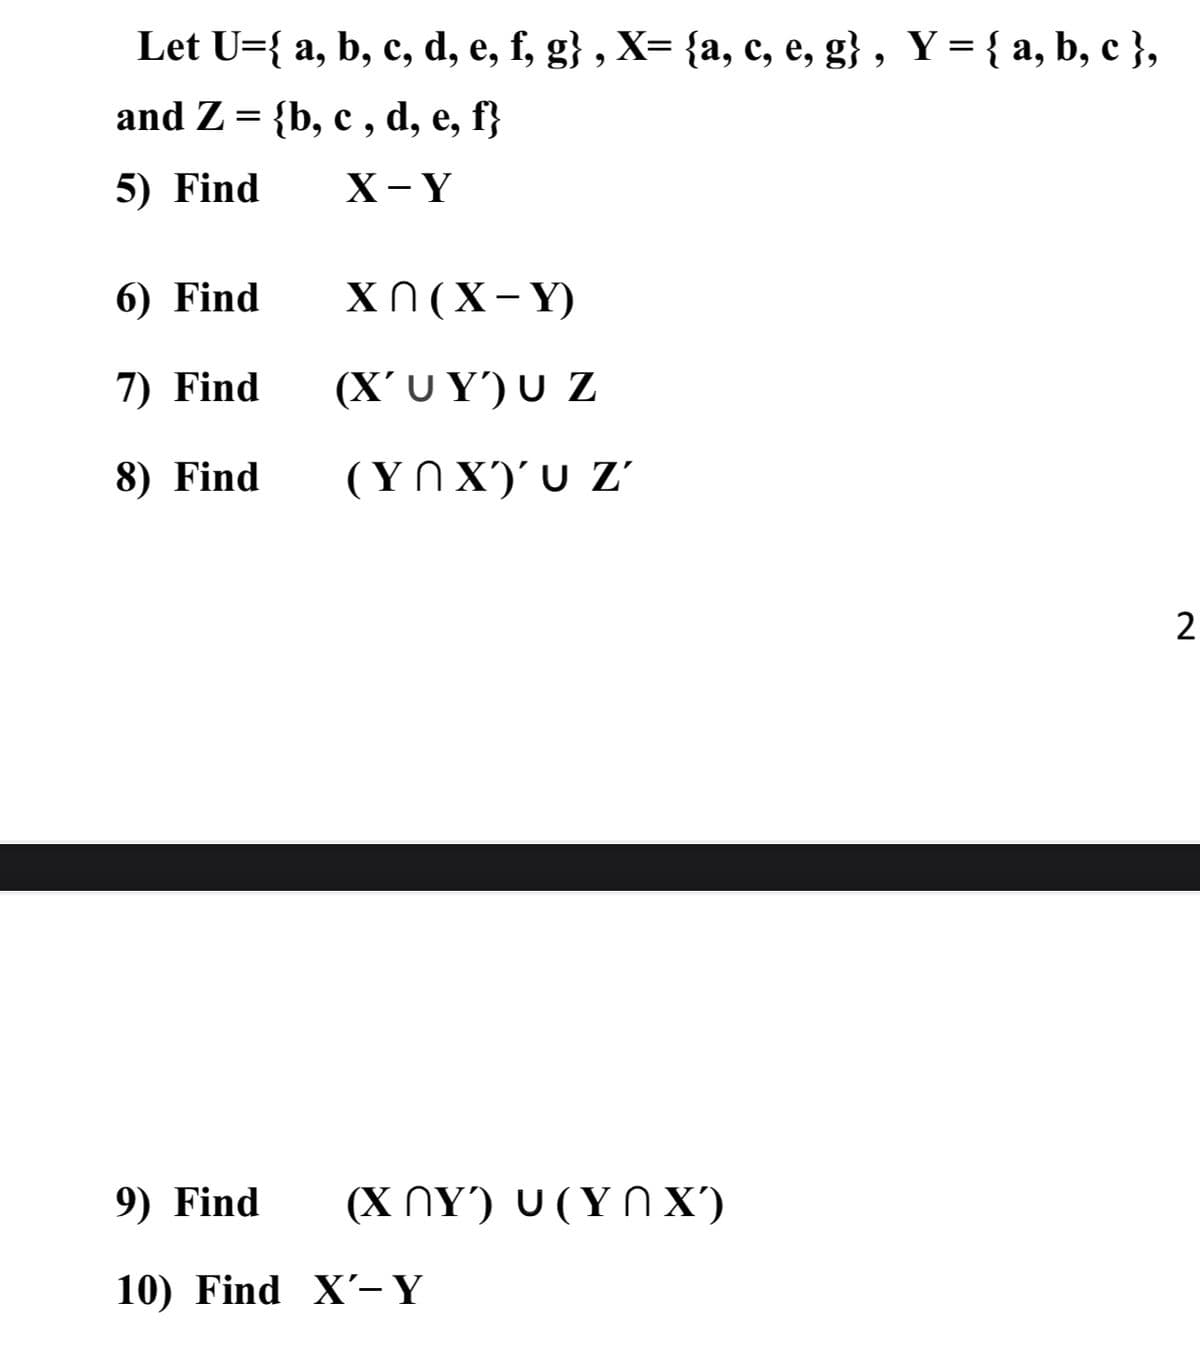 Let U={ a, b, c, d, e, f, g} , X= {a, c, e, g} , Y = { a, b, c },
and Z= {b, c , d, e, f}
6.
5) Find
X- Y
6) Find
X N (X- Y)
7) Find
(X' U Y') U Z
8) Find
(ΥΛ Χ) υ z'
2
9) Find
(ΧΛΥ) υ(ΥΛ Χ)
10) Find X'-Y
